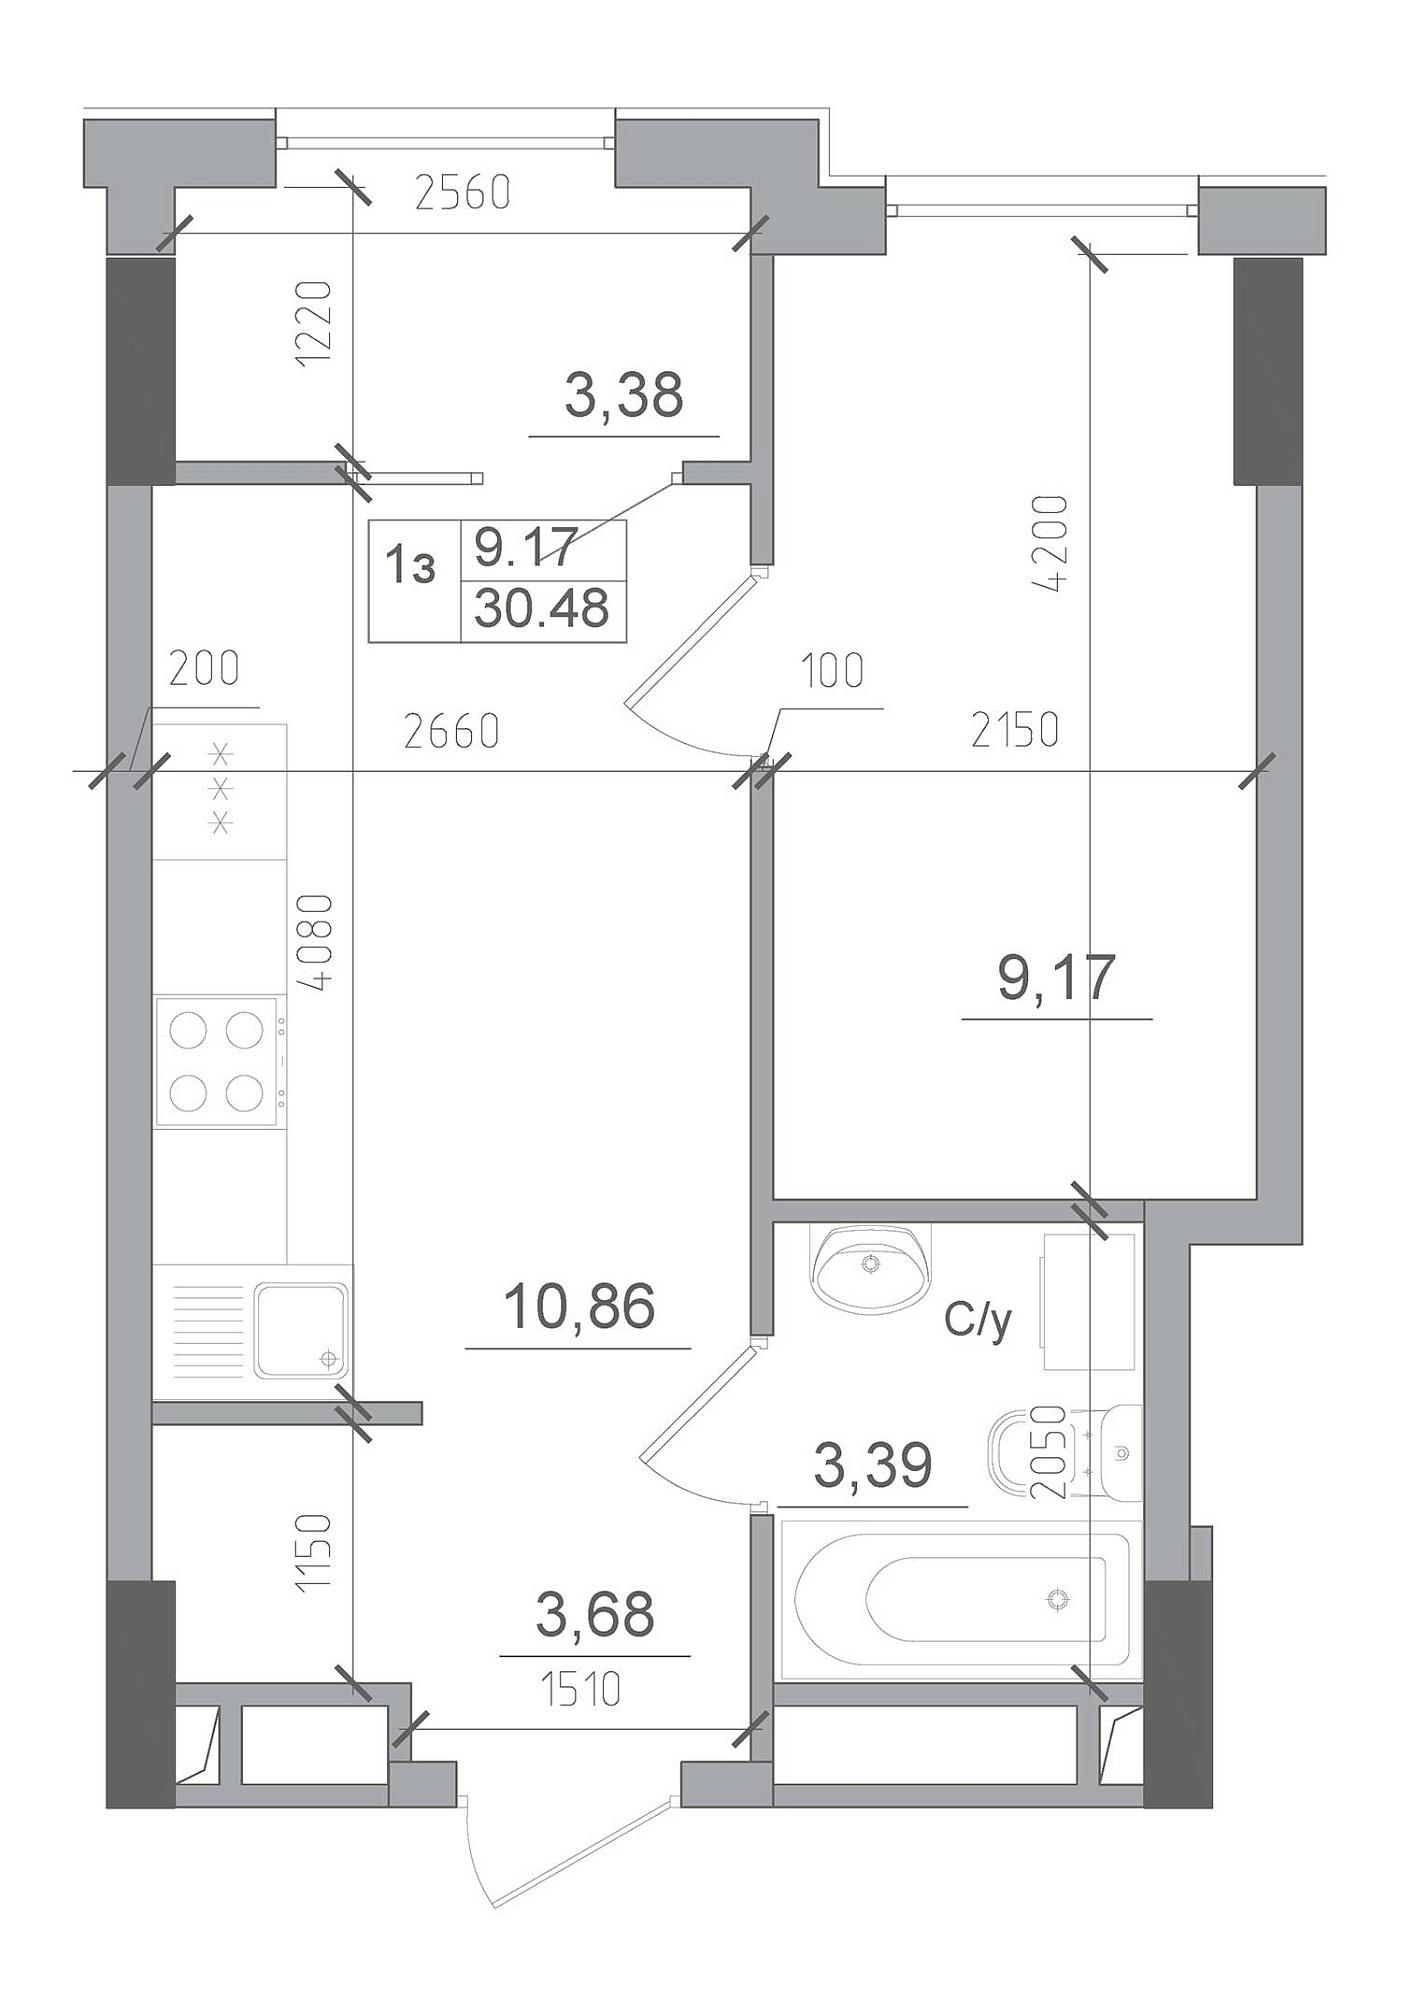 Планування 1-к квартира площею 30.48м2, AB-22-04/00013.